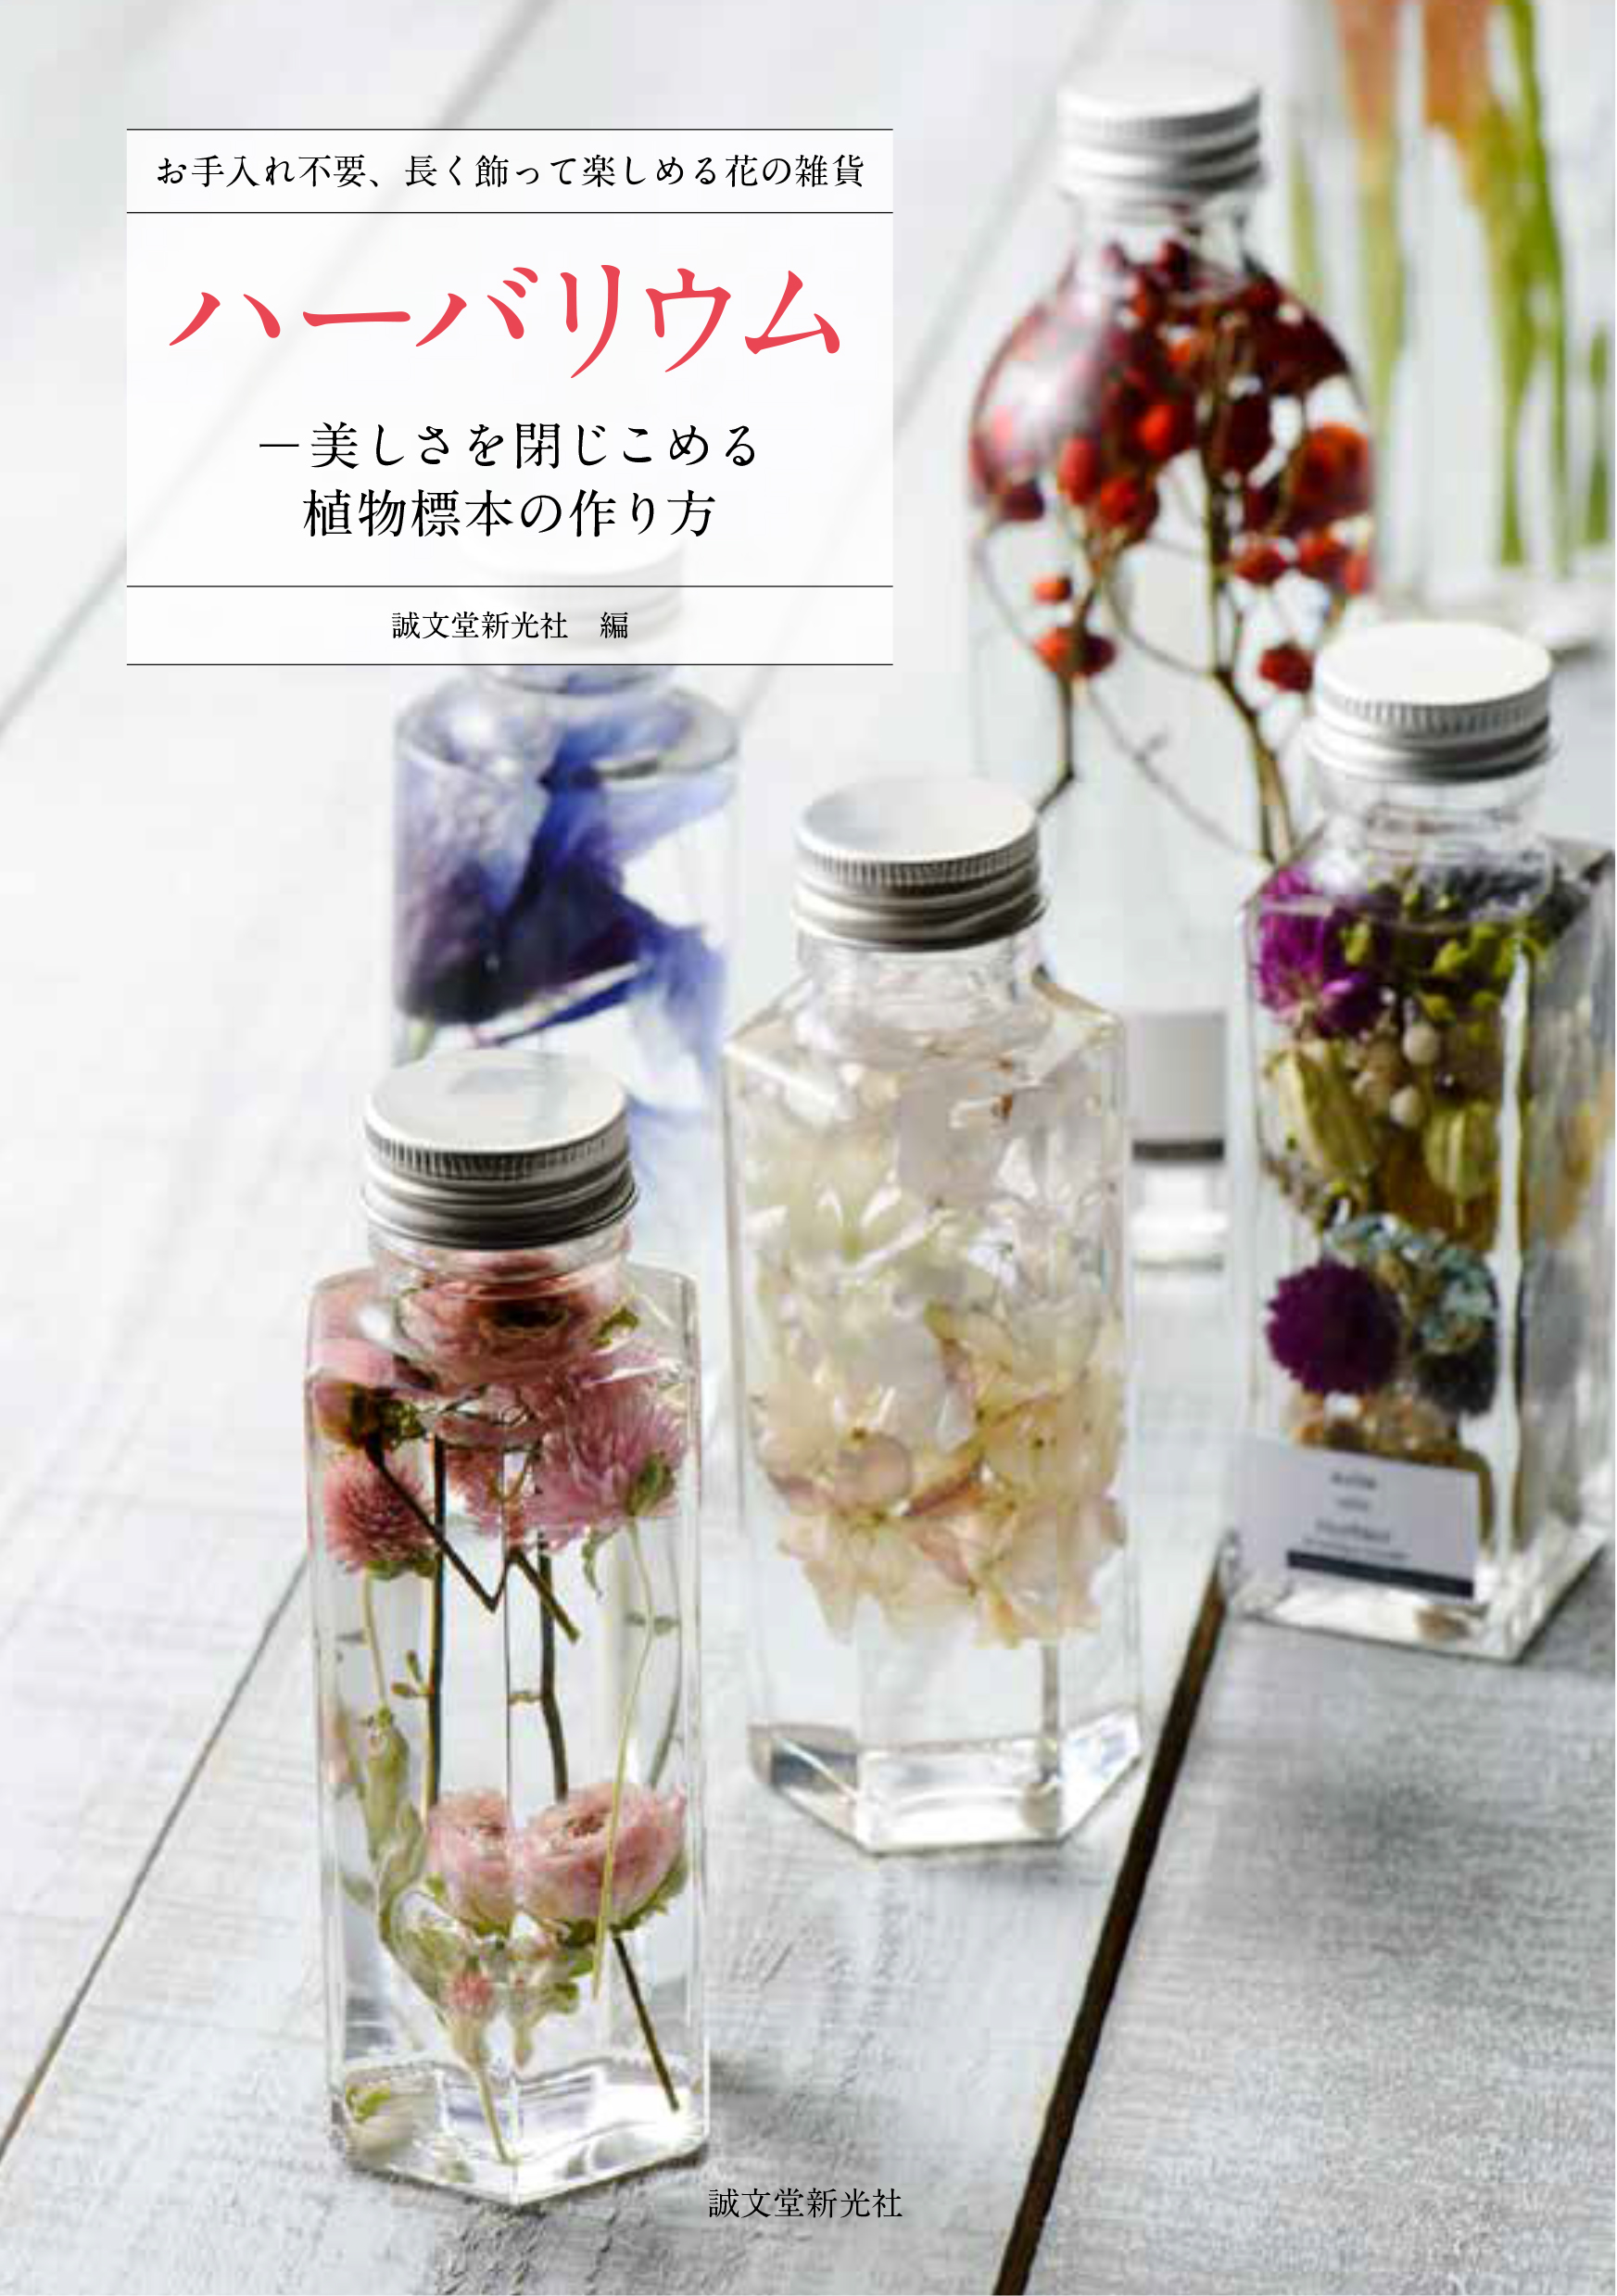 女性に大人気 お花をオイルでビンに詰めた植物雑貨 ハーバリウム の作り方とは 株式会社誠文堂新光社のプレスリリース